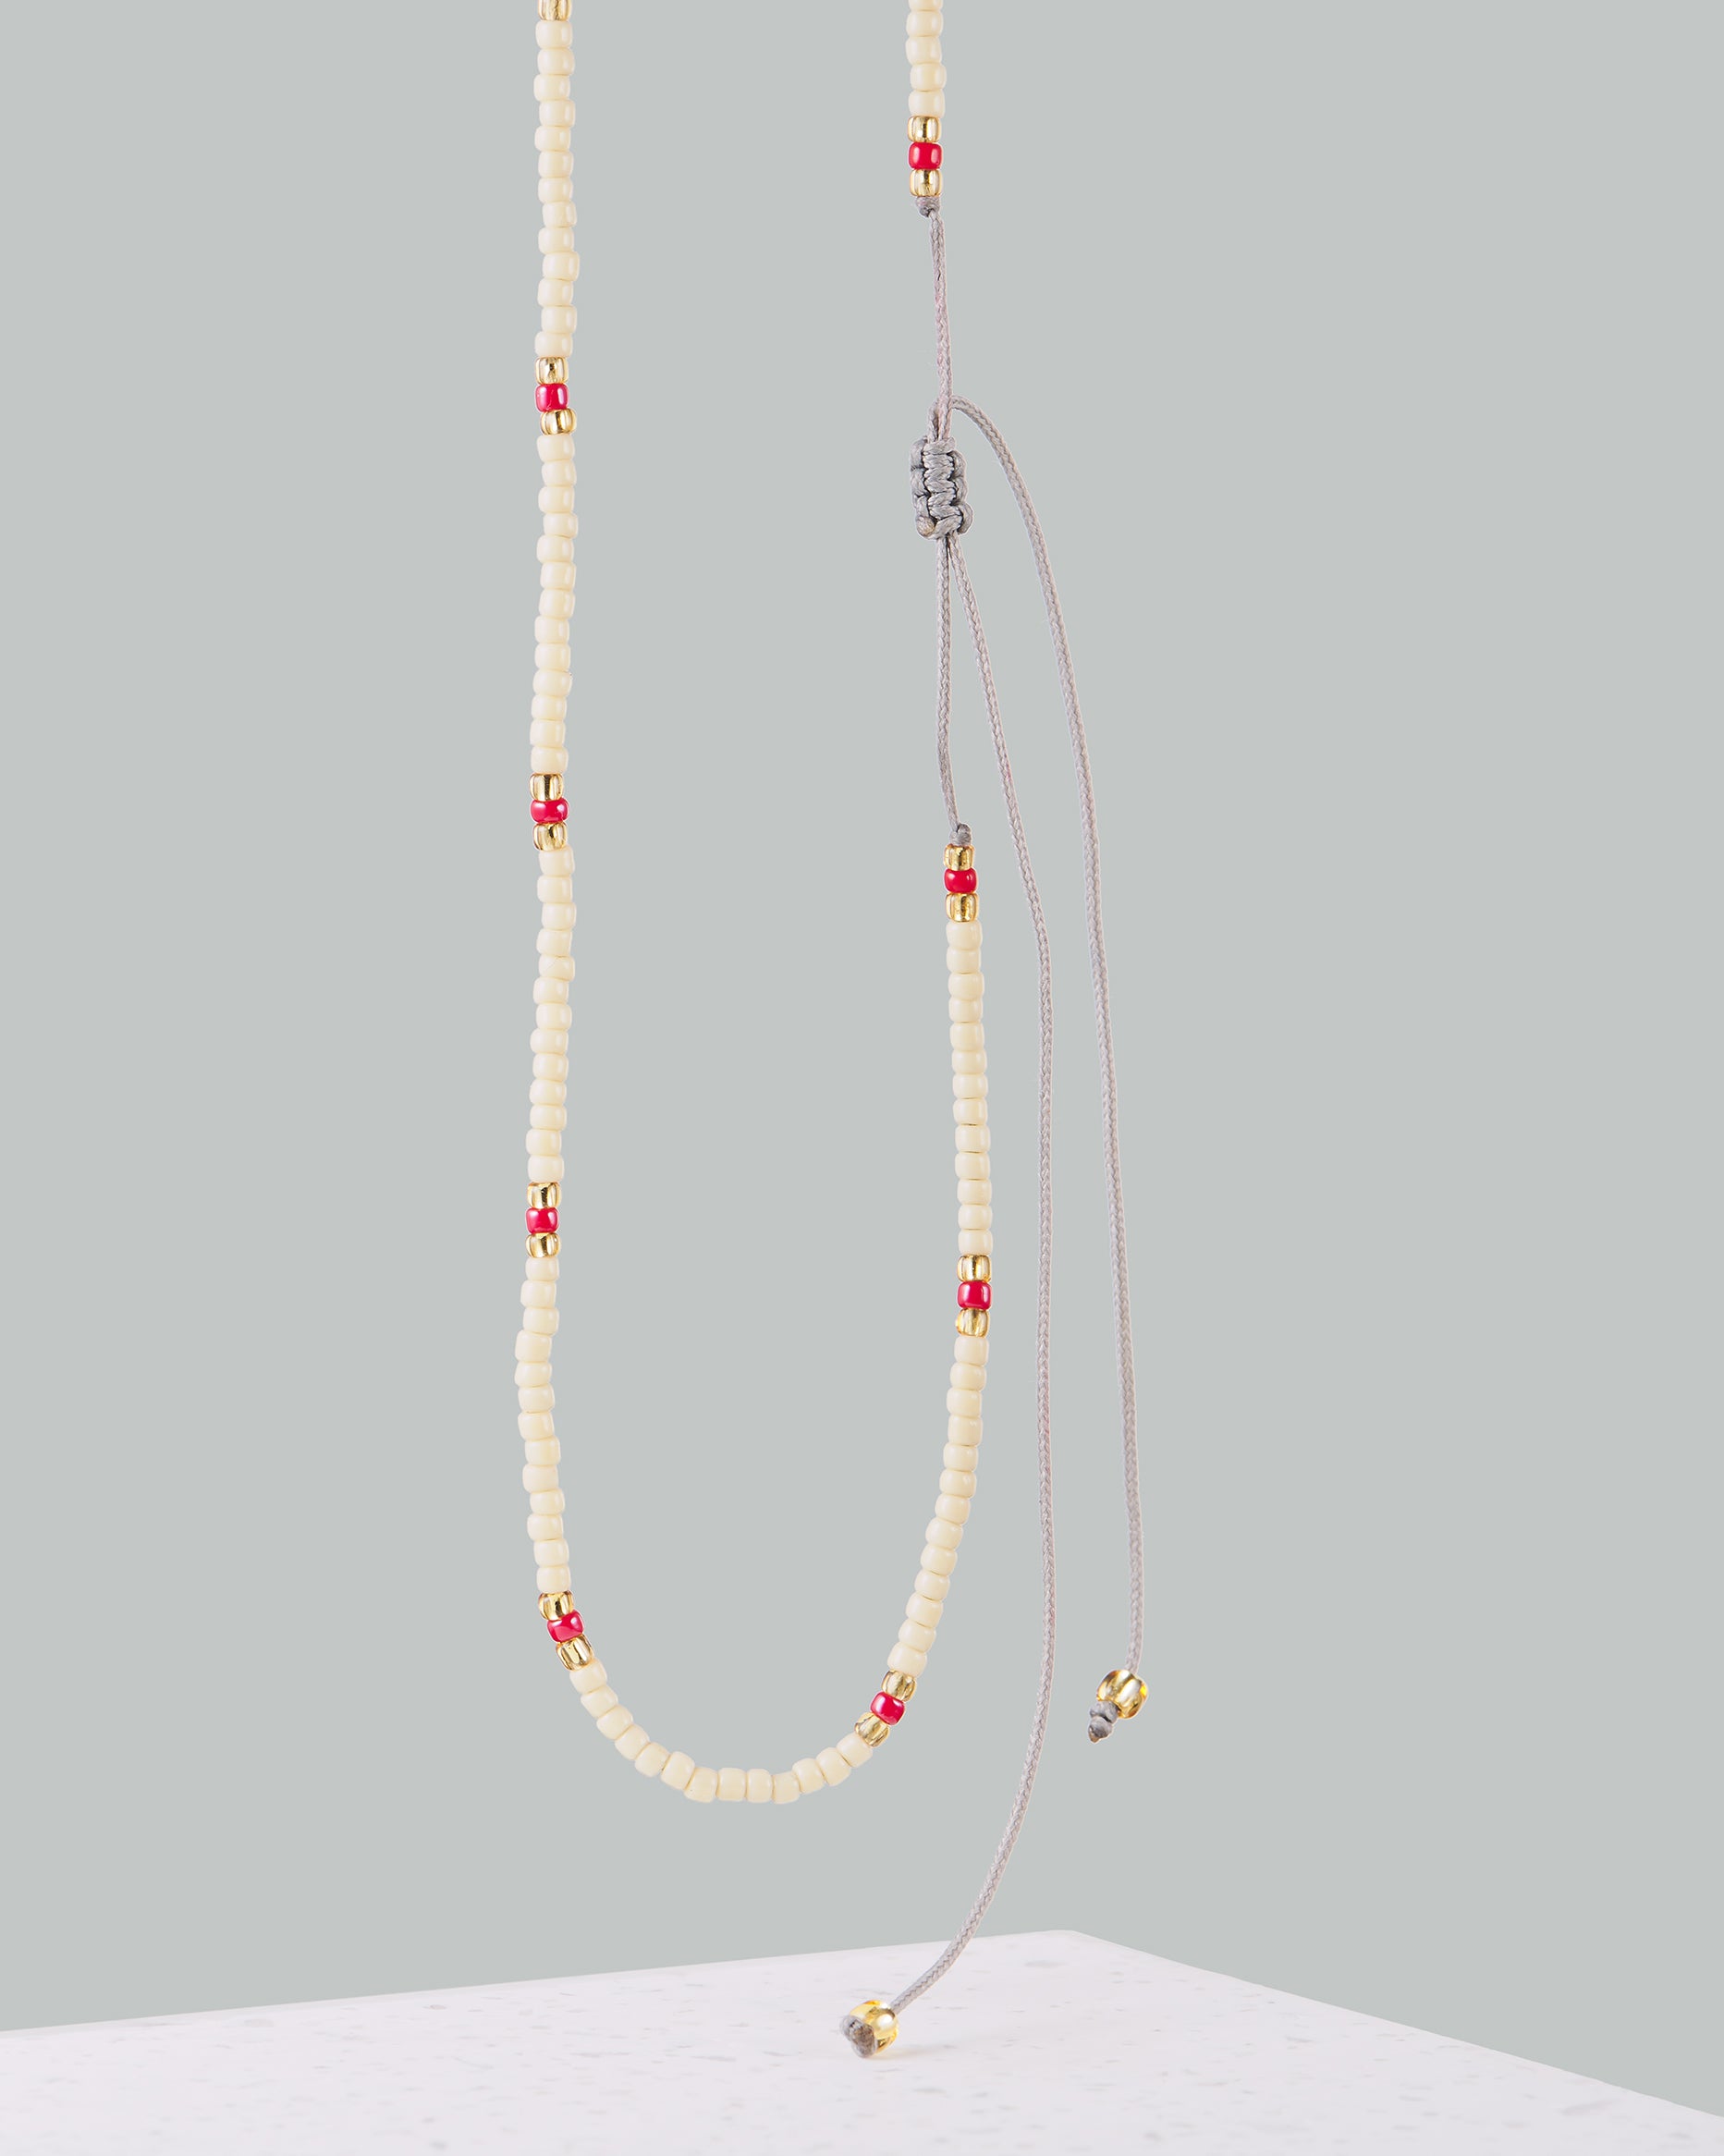 Schlichter Choker| Handgemachte Kette von VERLAN Jewellery | Flexibel verstellbar mit roten Perlen | Fair und umweltschonend handmade in Bali